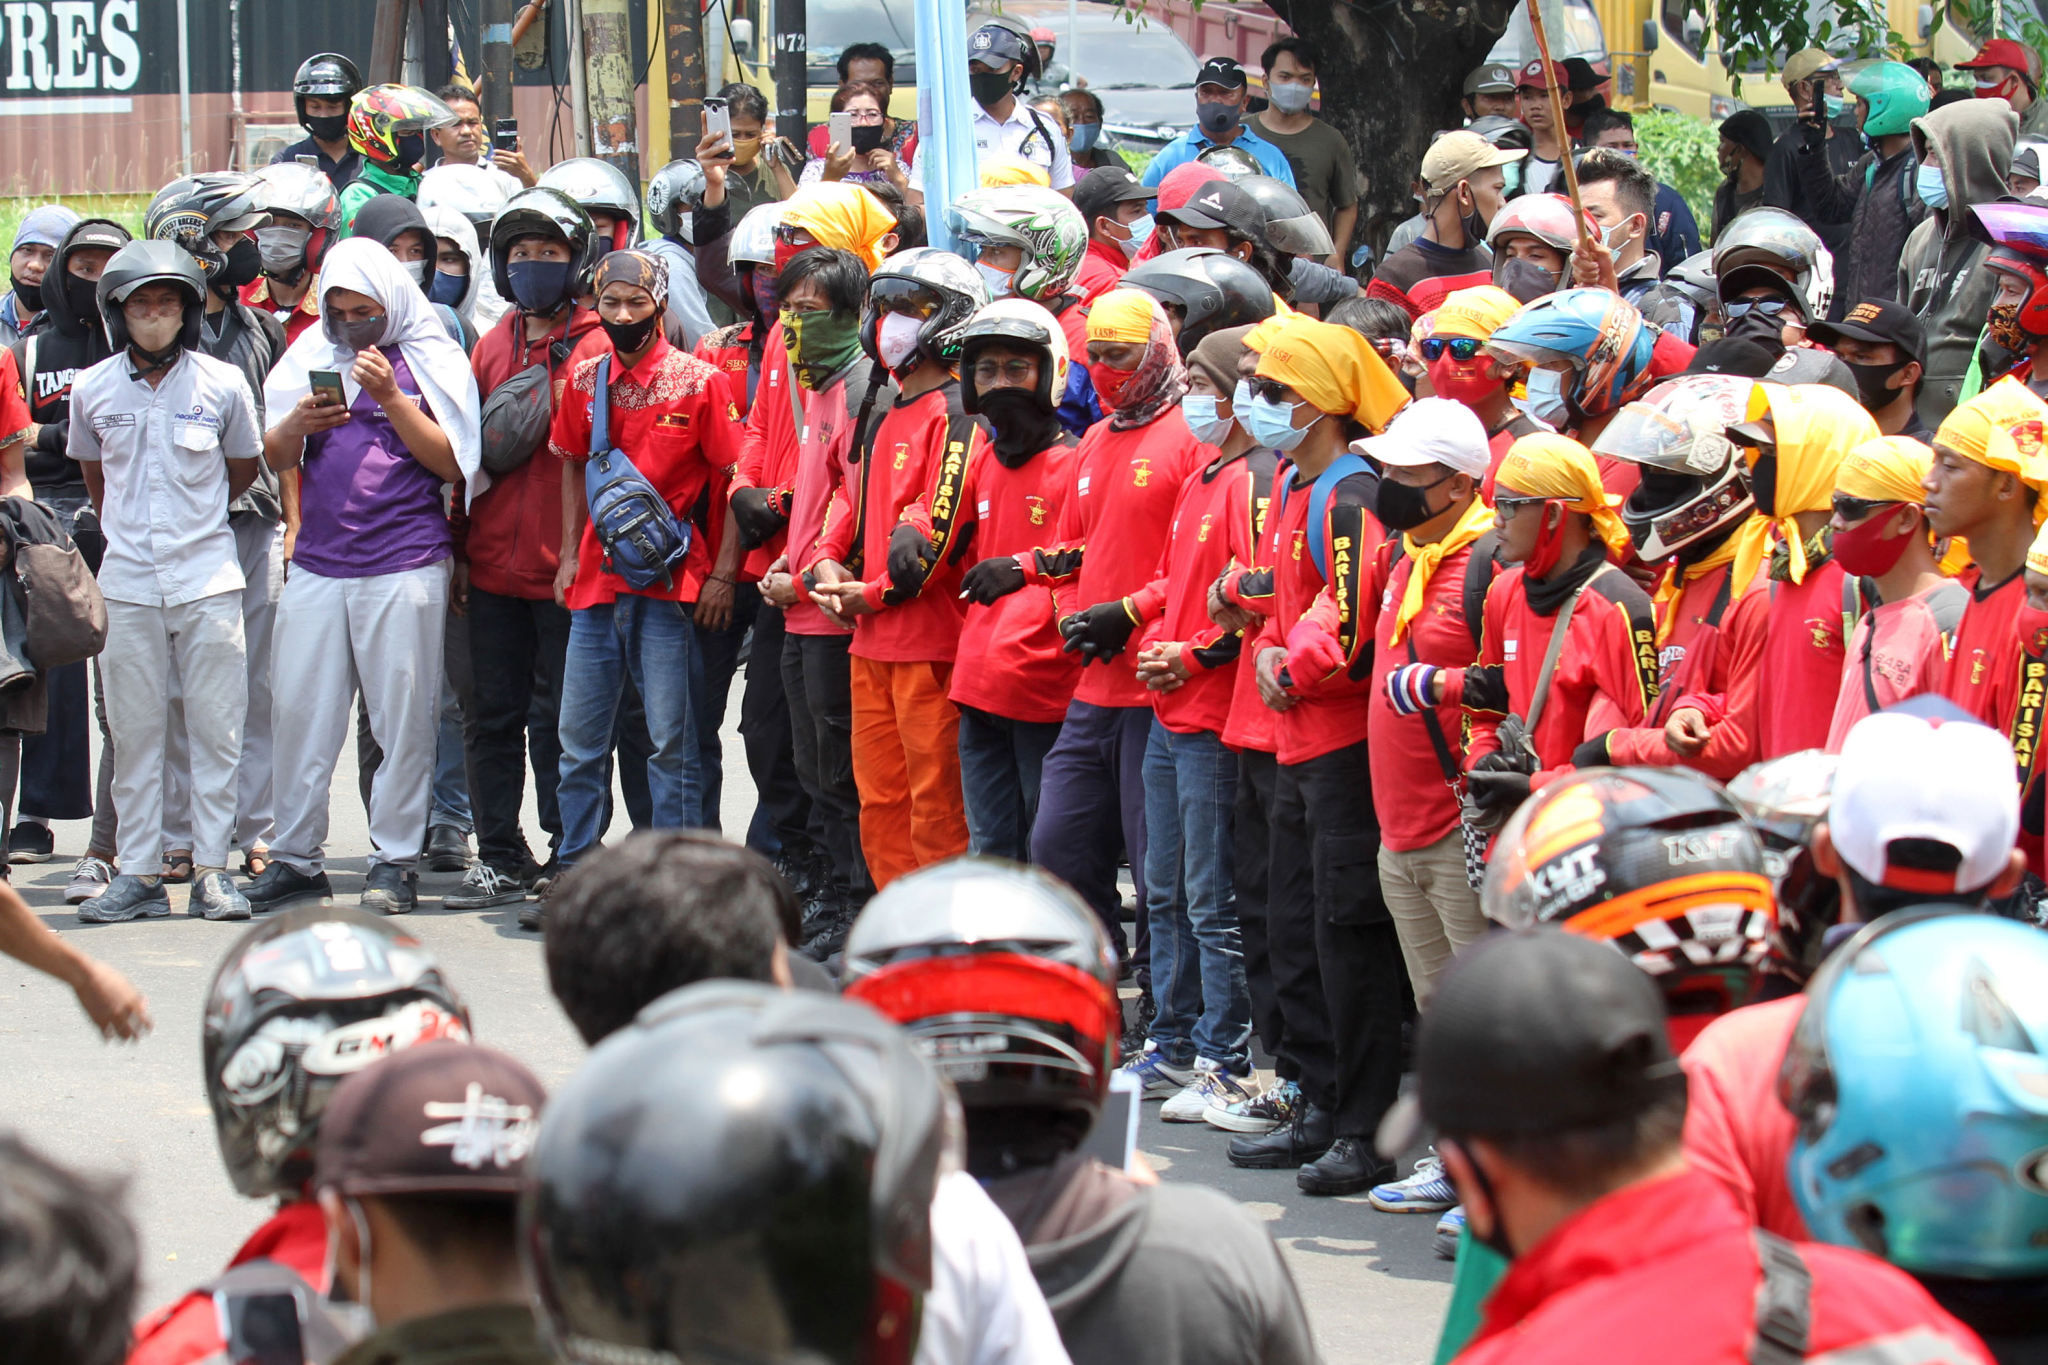 <p>Ribuan buruh mengikuti aksi unjuk rasa di Jalan Daan Mogot, Kota Tangerang, Banten, Rabu, 7 Oktober 2020. Aksi tersebut sebagai bentuk kekecewaan buruh atas pengesahan Undang-Undang Cipta Kerja oleh DPR yang dianggap merugikan kaum buruh. Foto: Panji Asmoro/TrenAsia</p>
